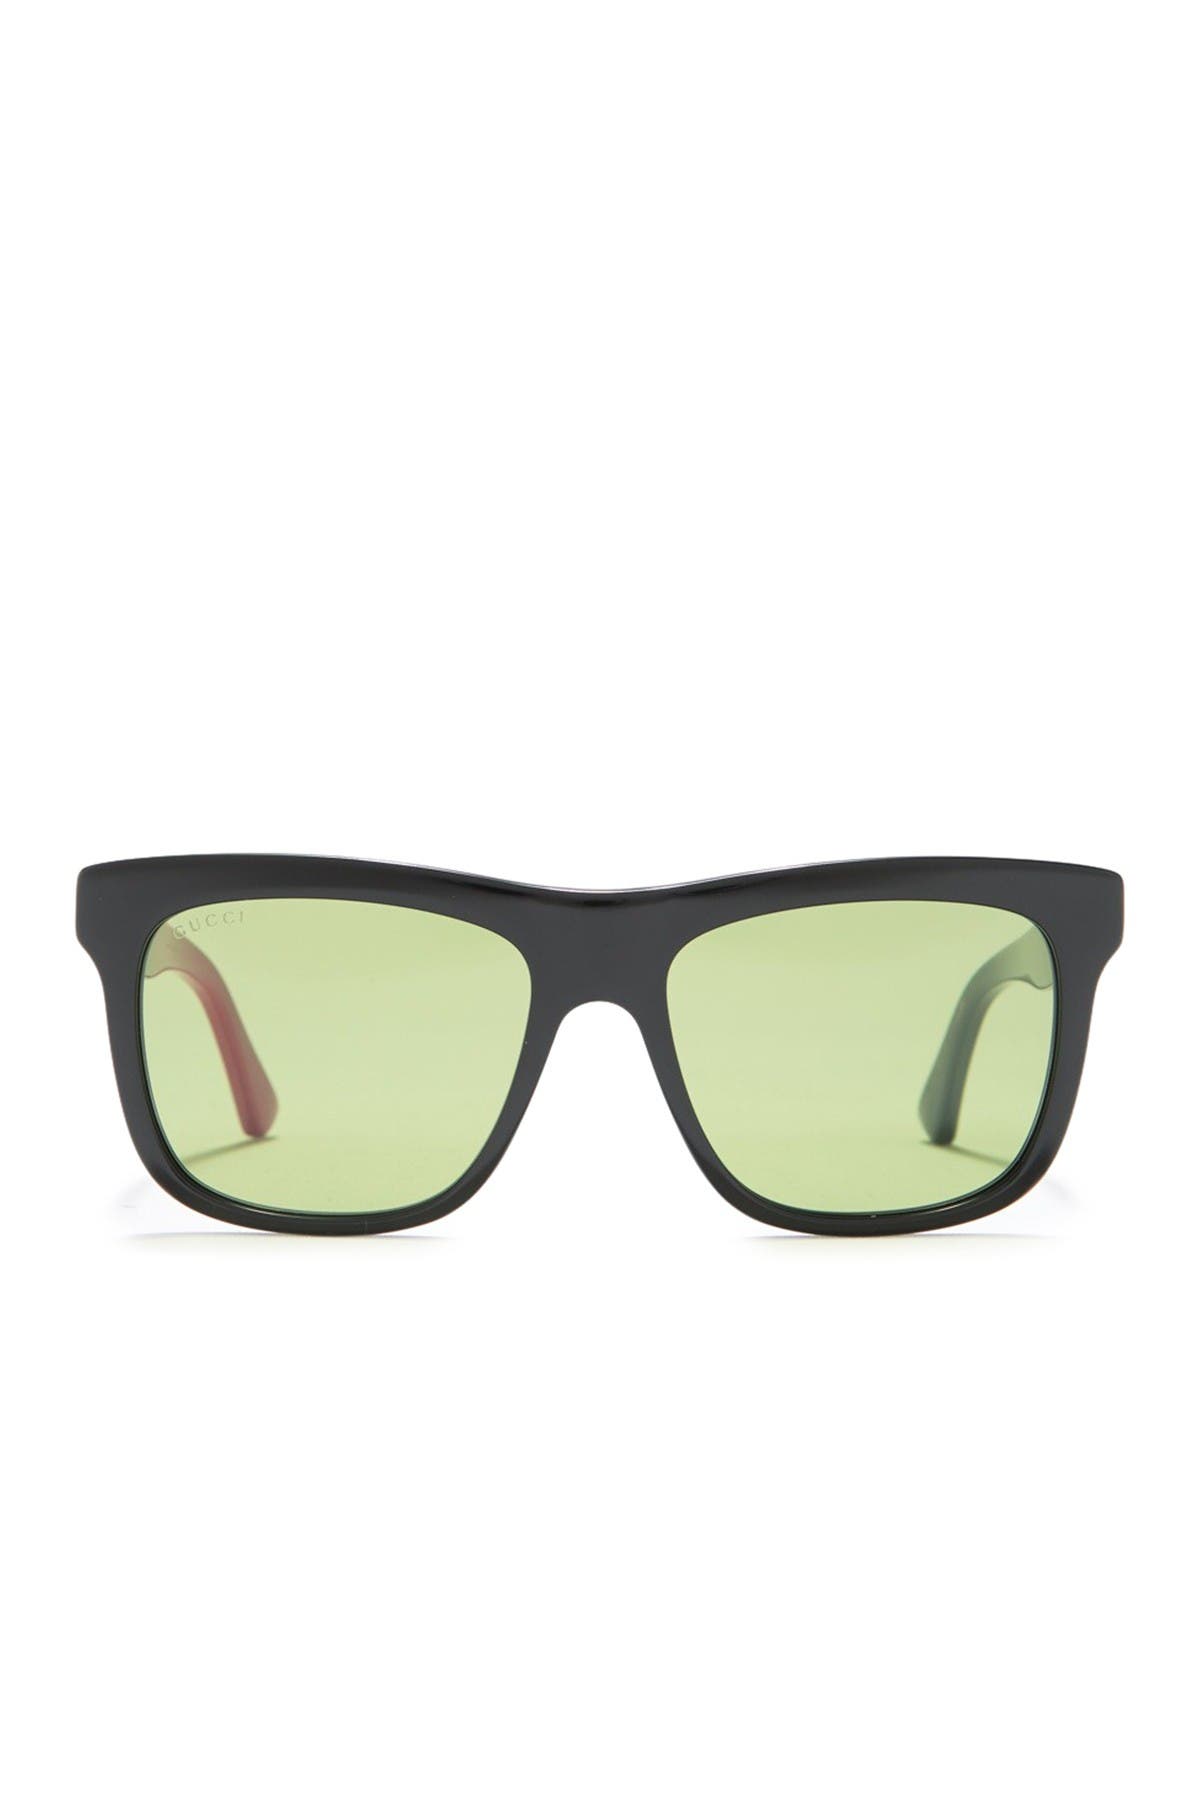 gucci sunglasses under $100